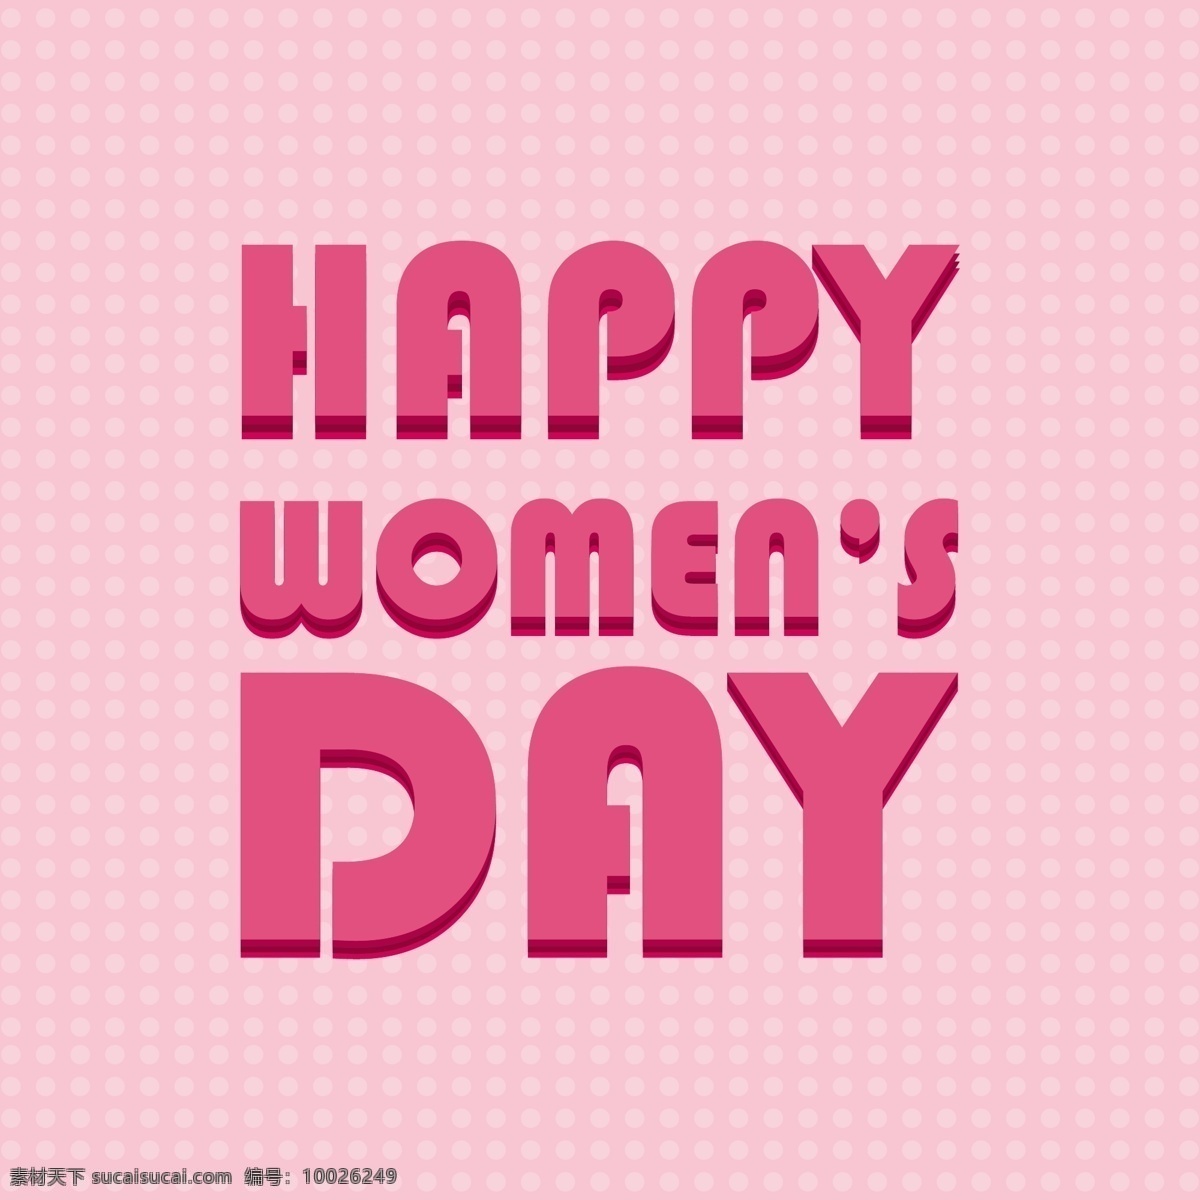 快乐 妇女节 印刷术 版式 粉色 字体 庆典 节日 点点 女士 自由 女性 庆祝 游行 国际 日 妇女